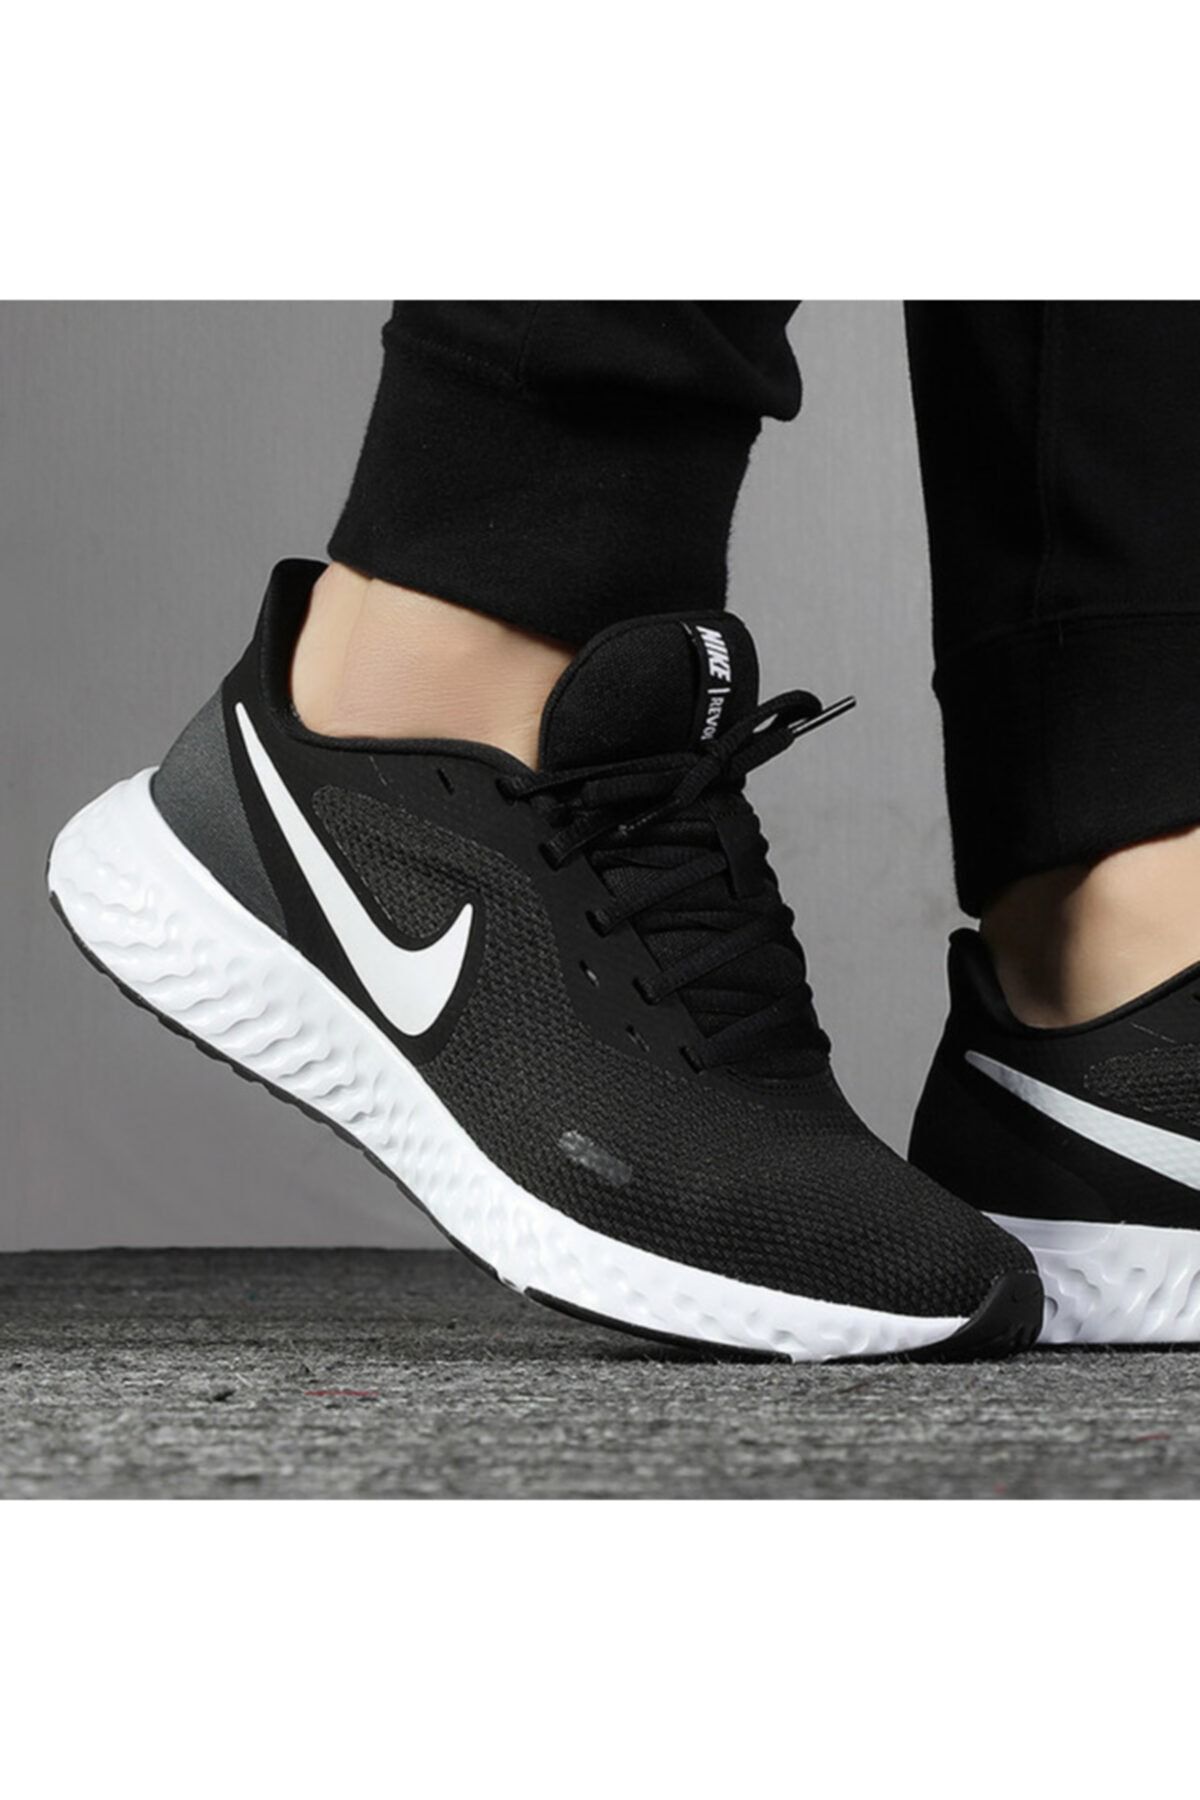 Nike Bq3204--002 Revolutıon 5 Erkek Yürüyüş Koşu Ayakkabı